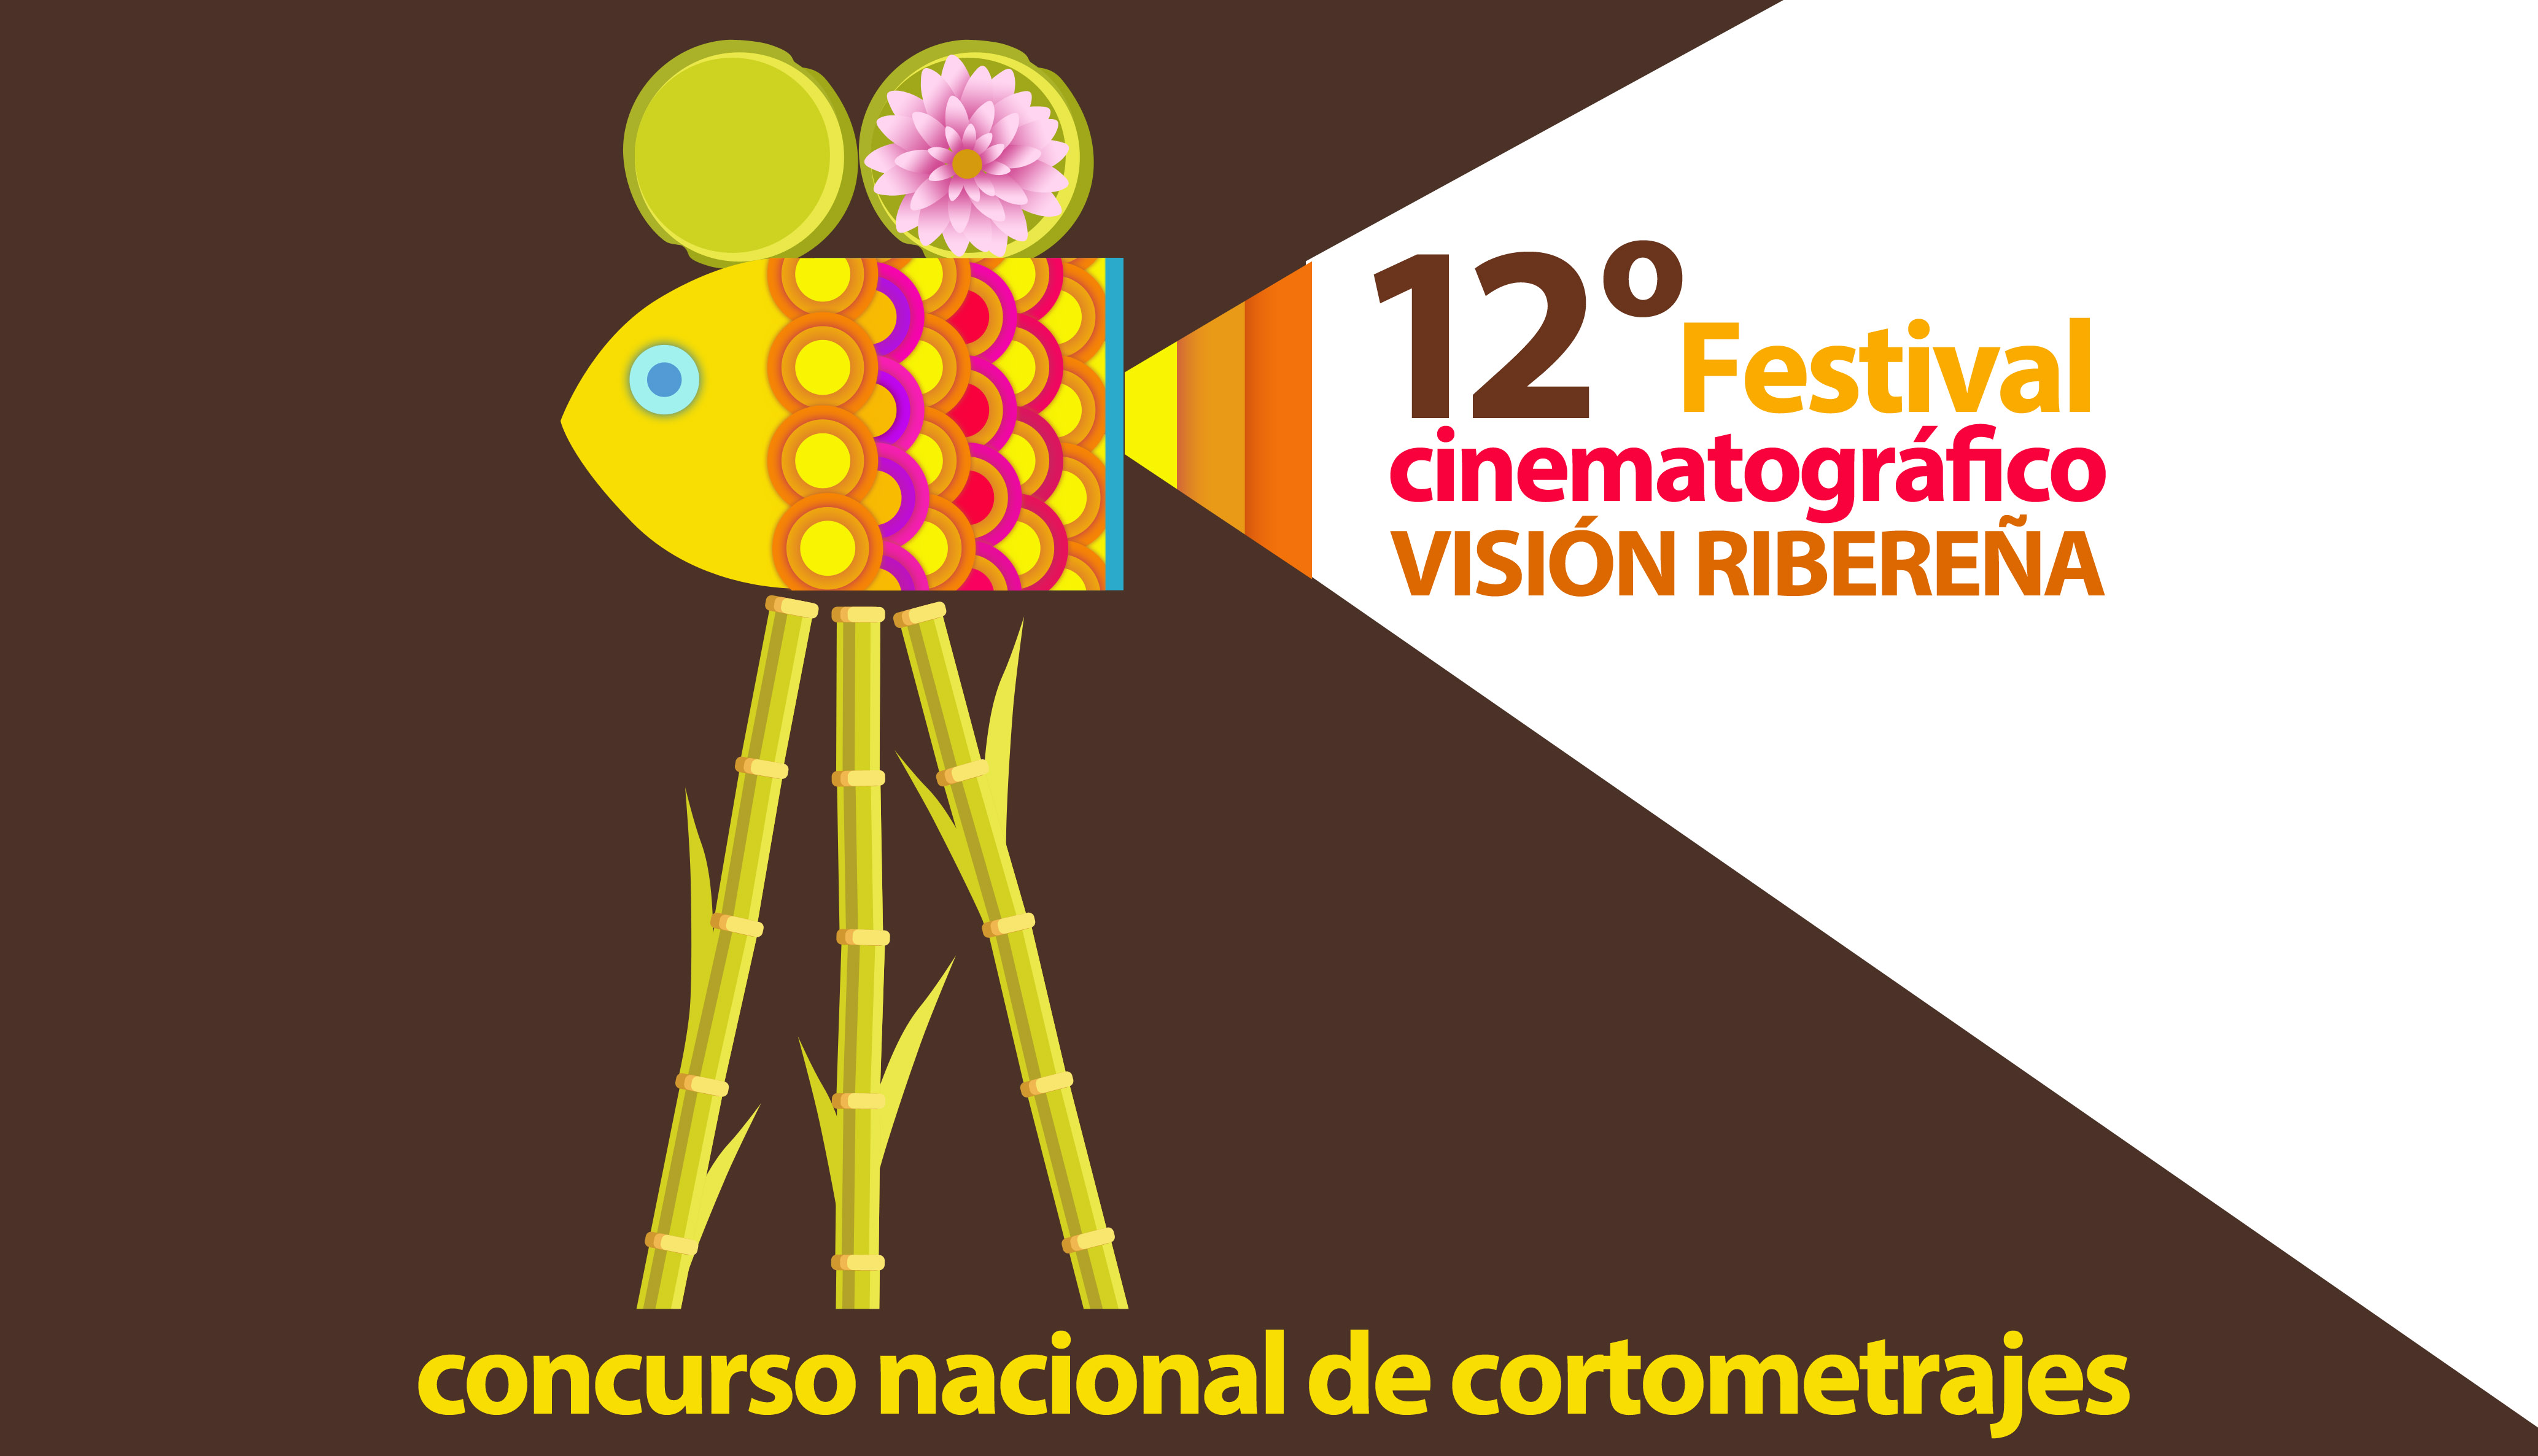 12º Festival Cinematográfico “Visión Ribereña”